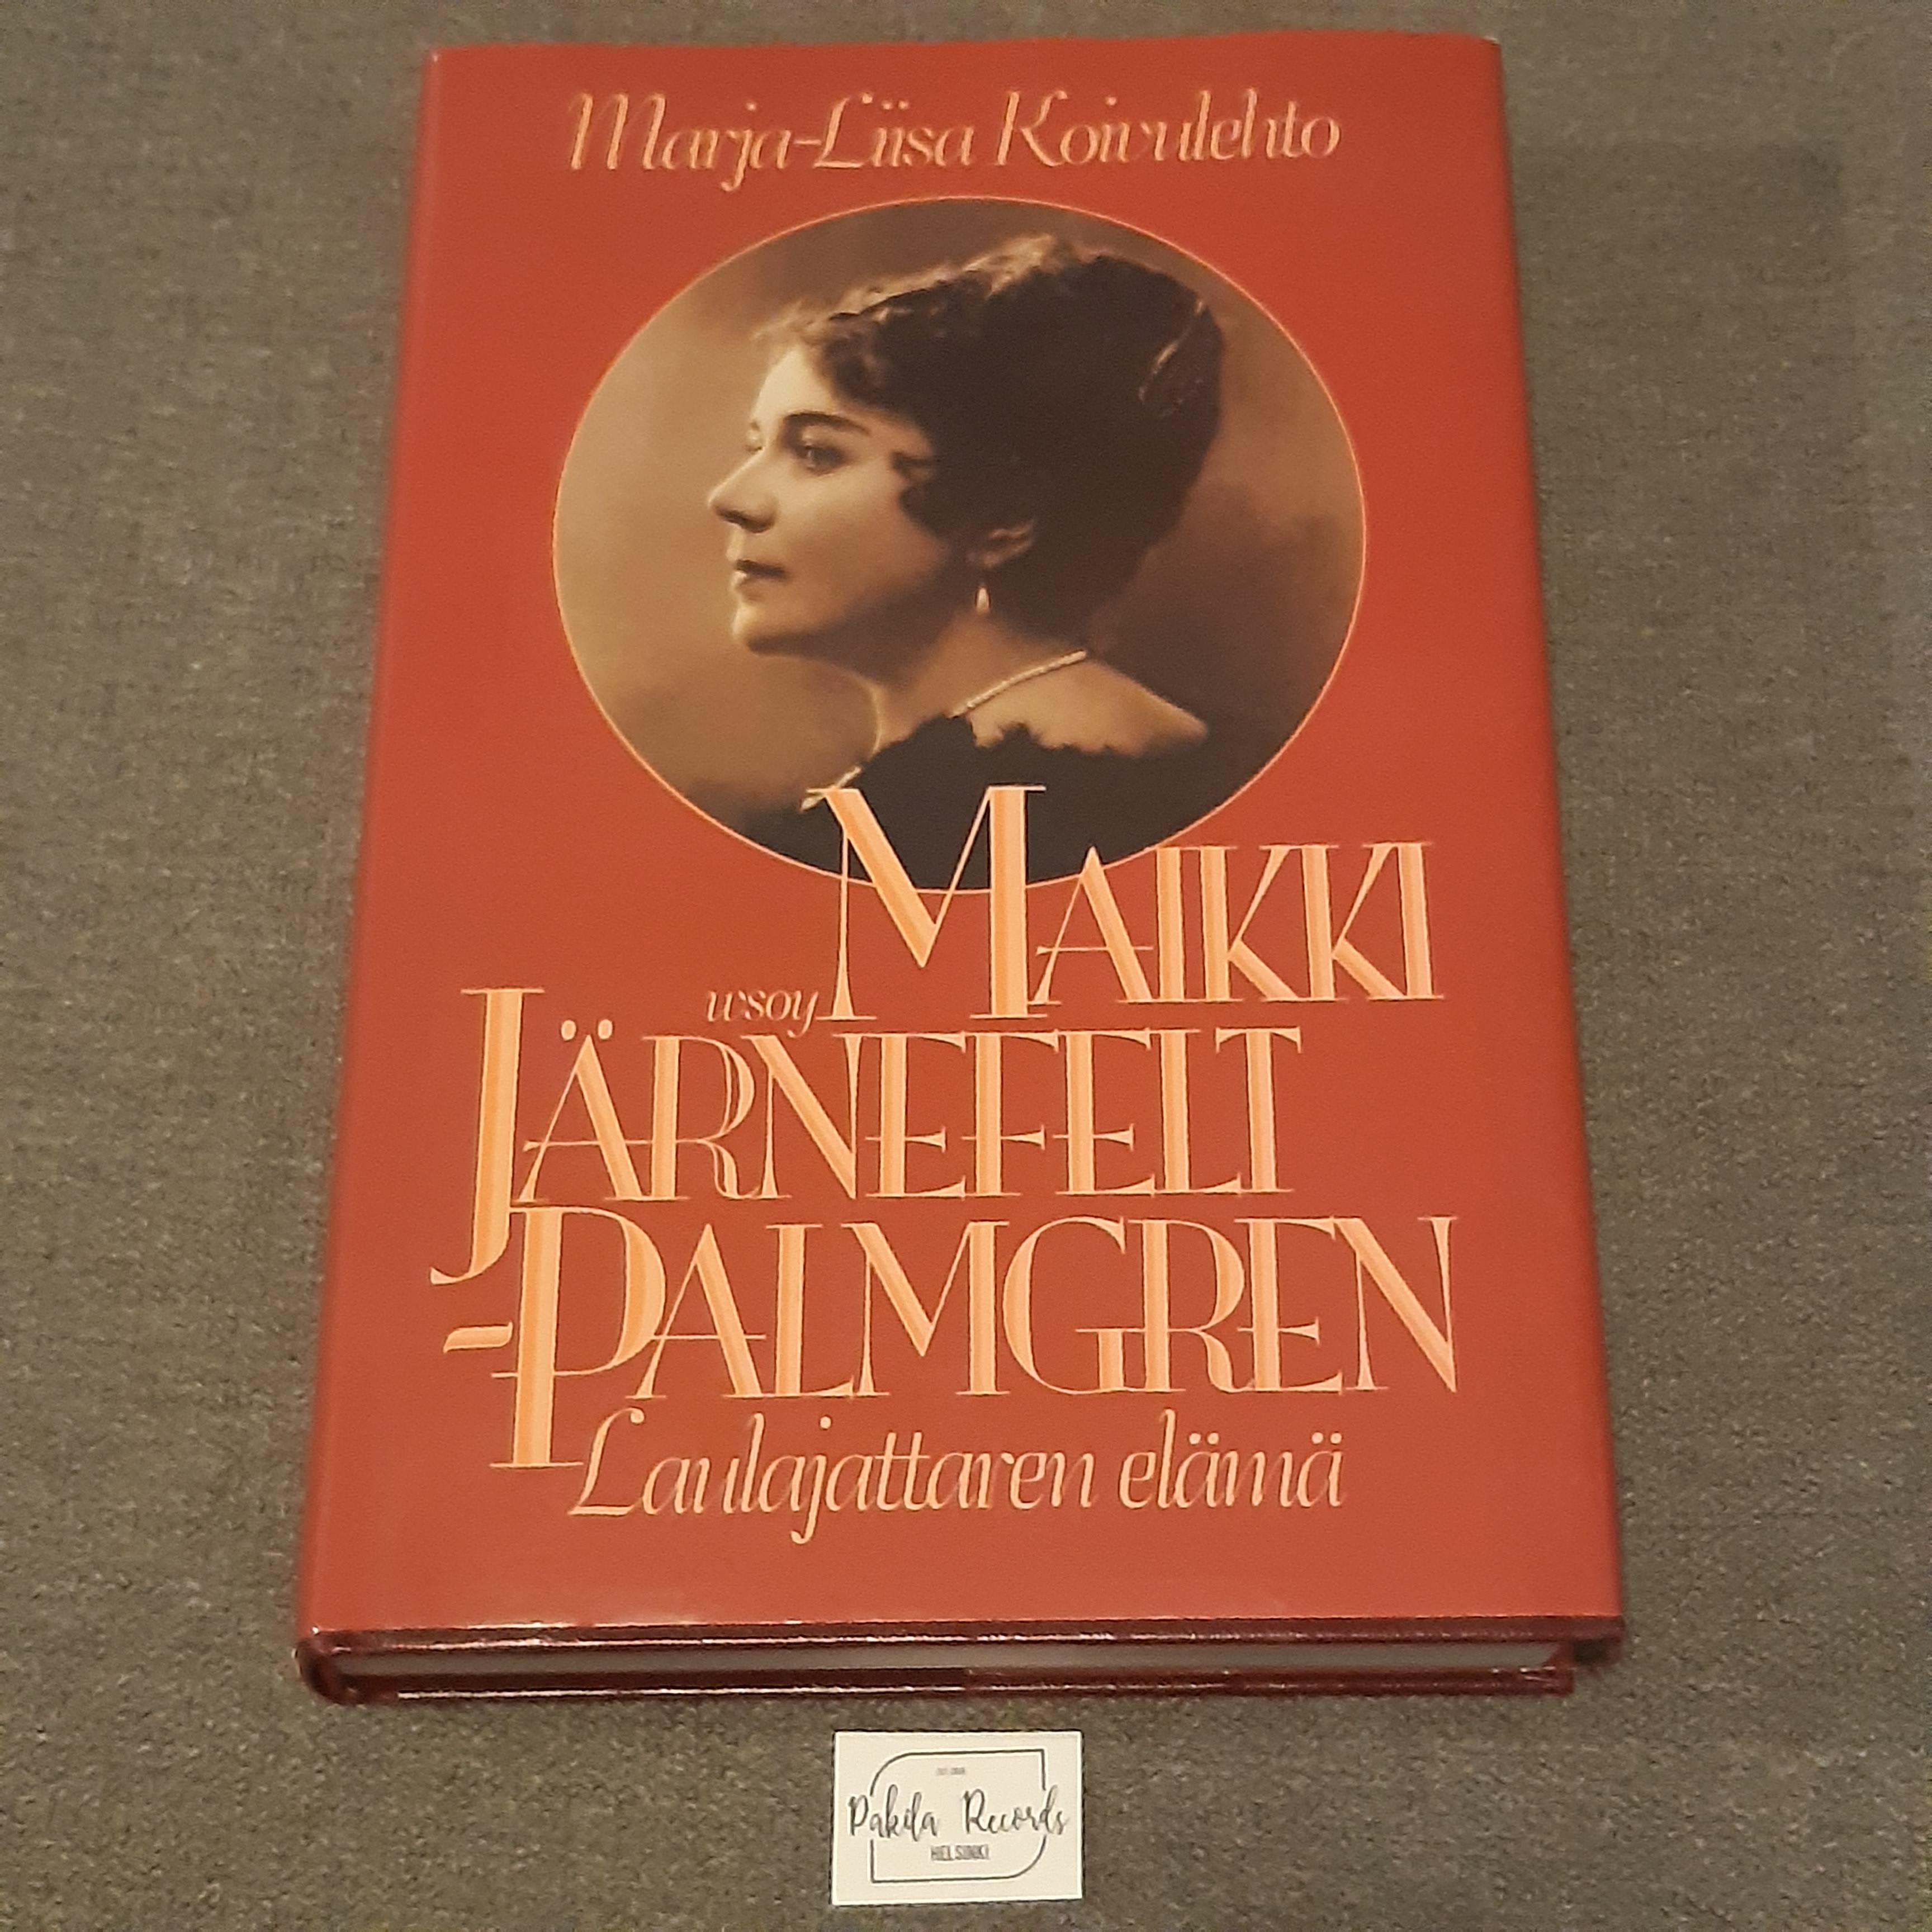 Maikki Järnefelt-Palmgren, Laulajattaren elämä - Marja-Liisa Koivulehto - Kirja (käytetty)